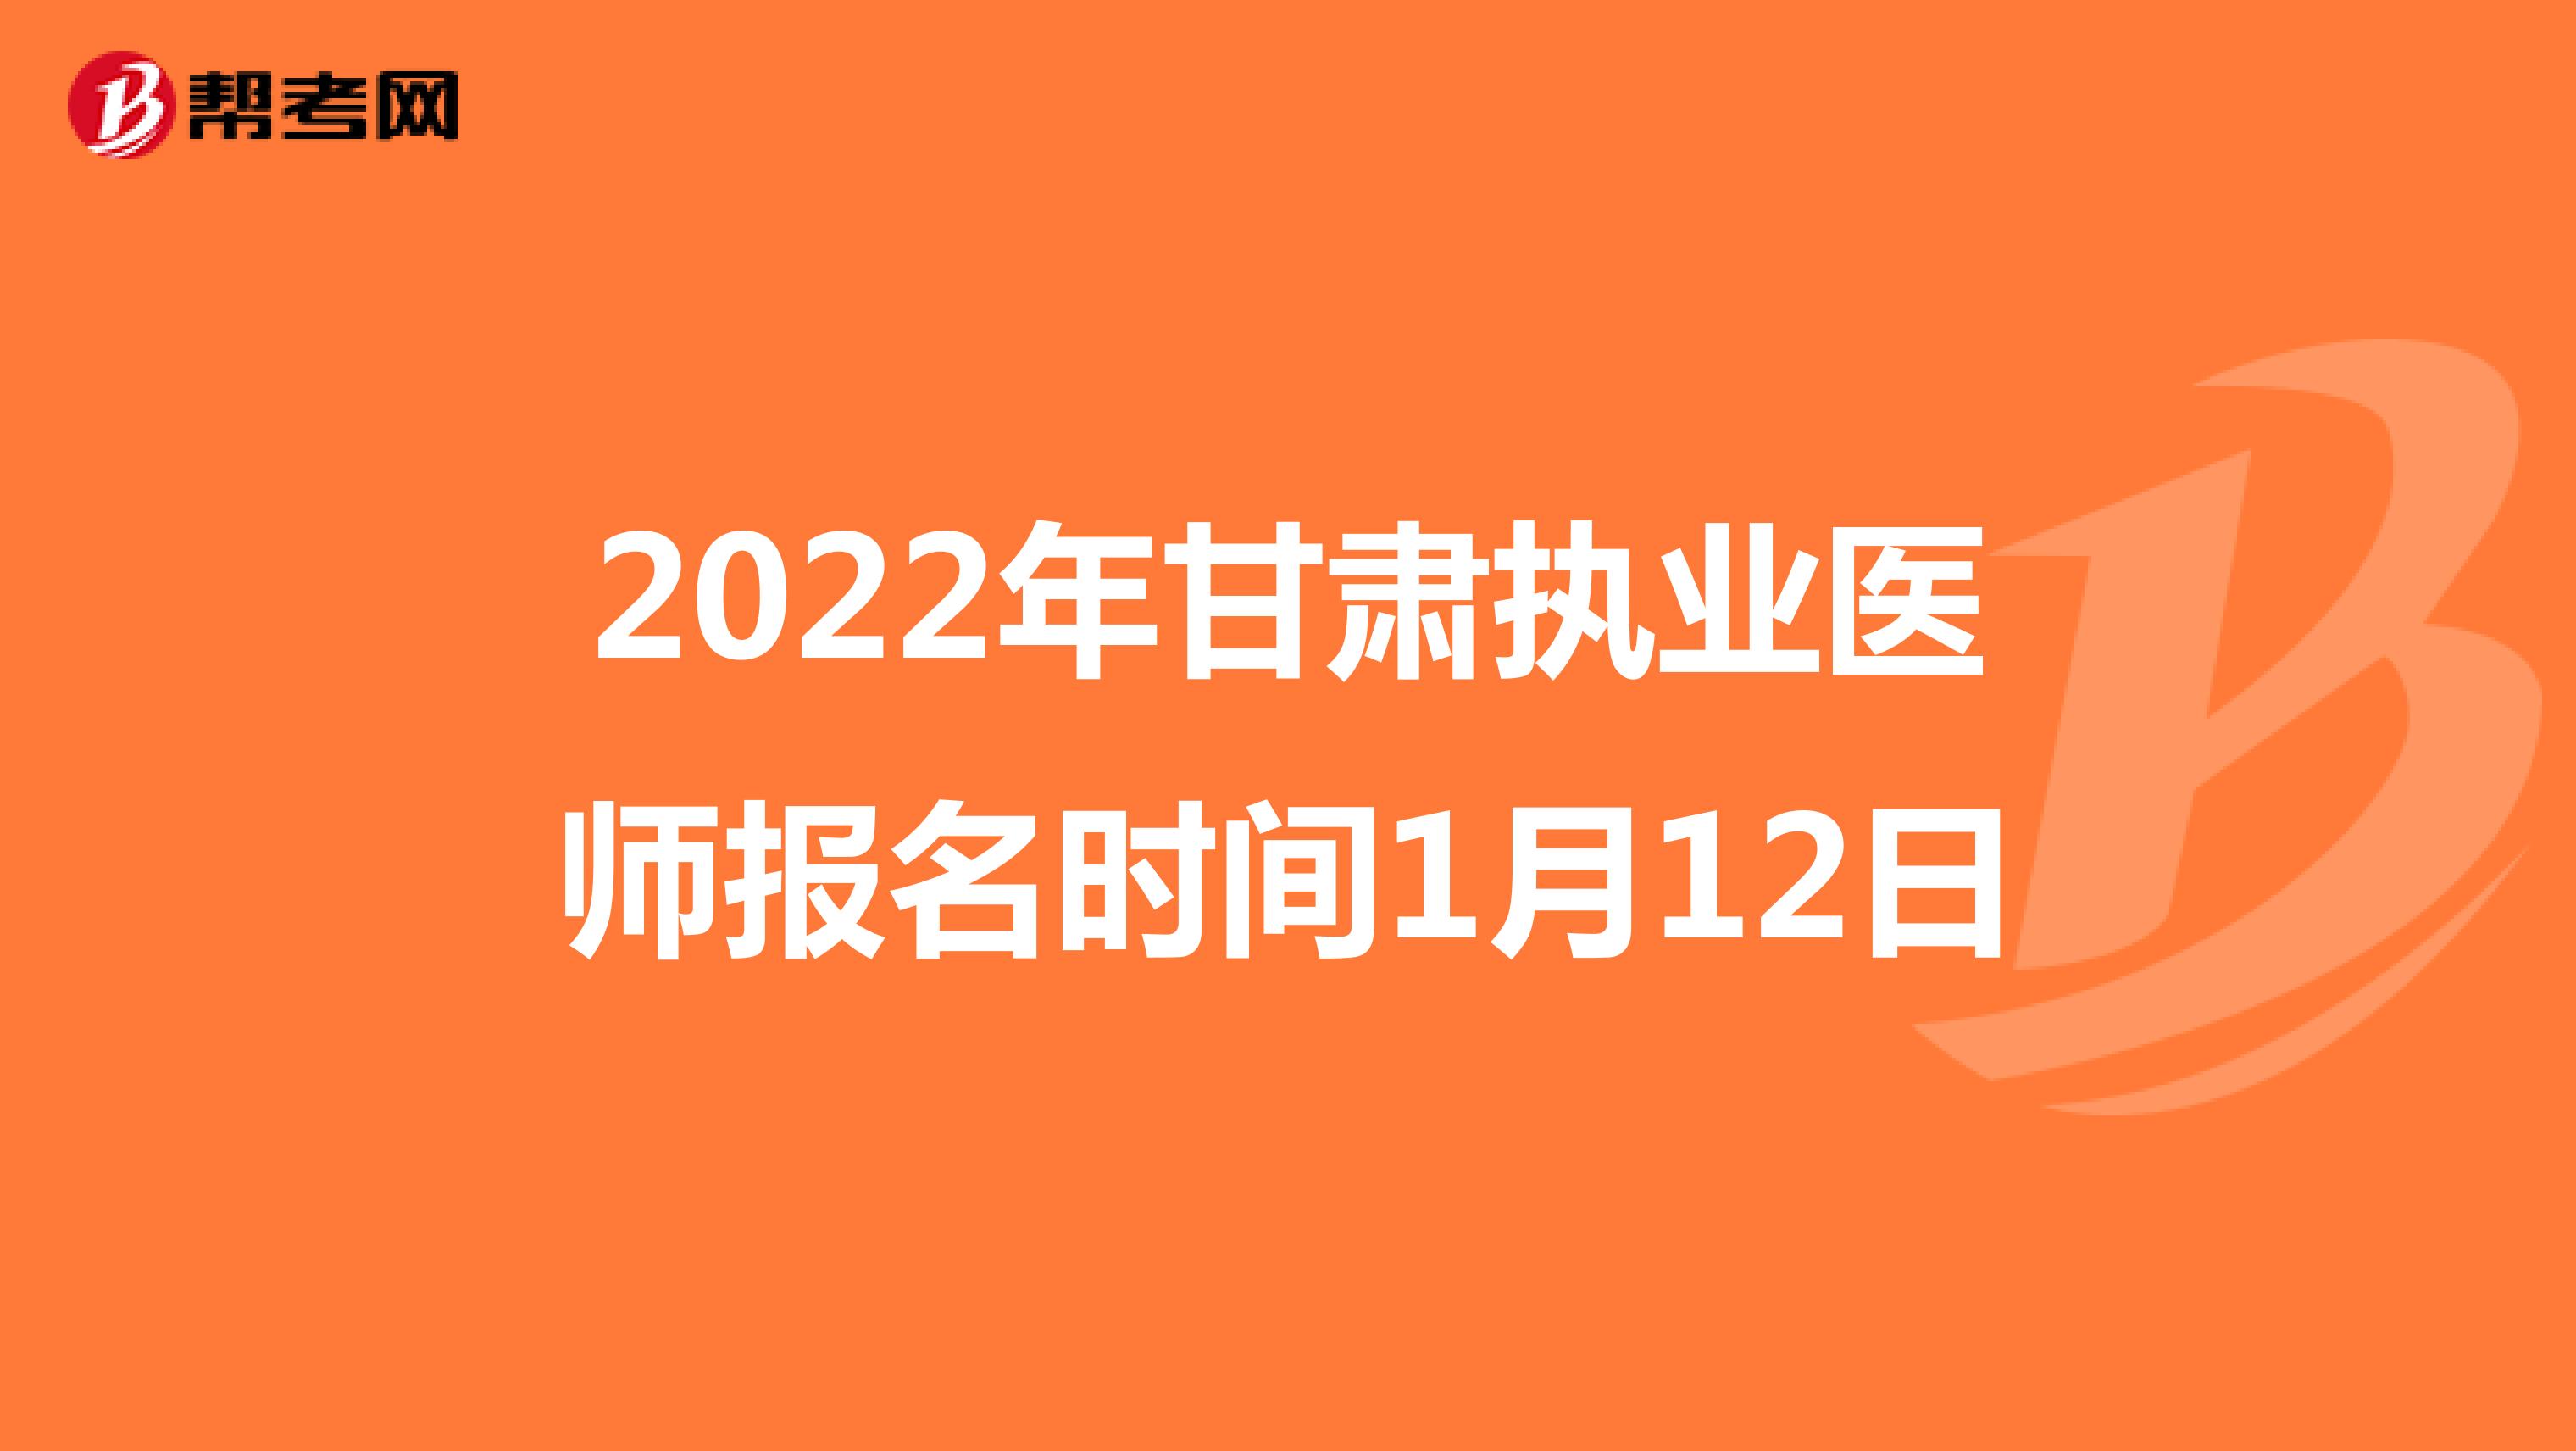 2022年甘肃执业医师报名时间1月12日